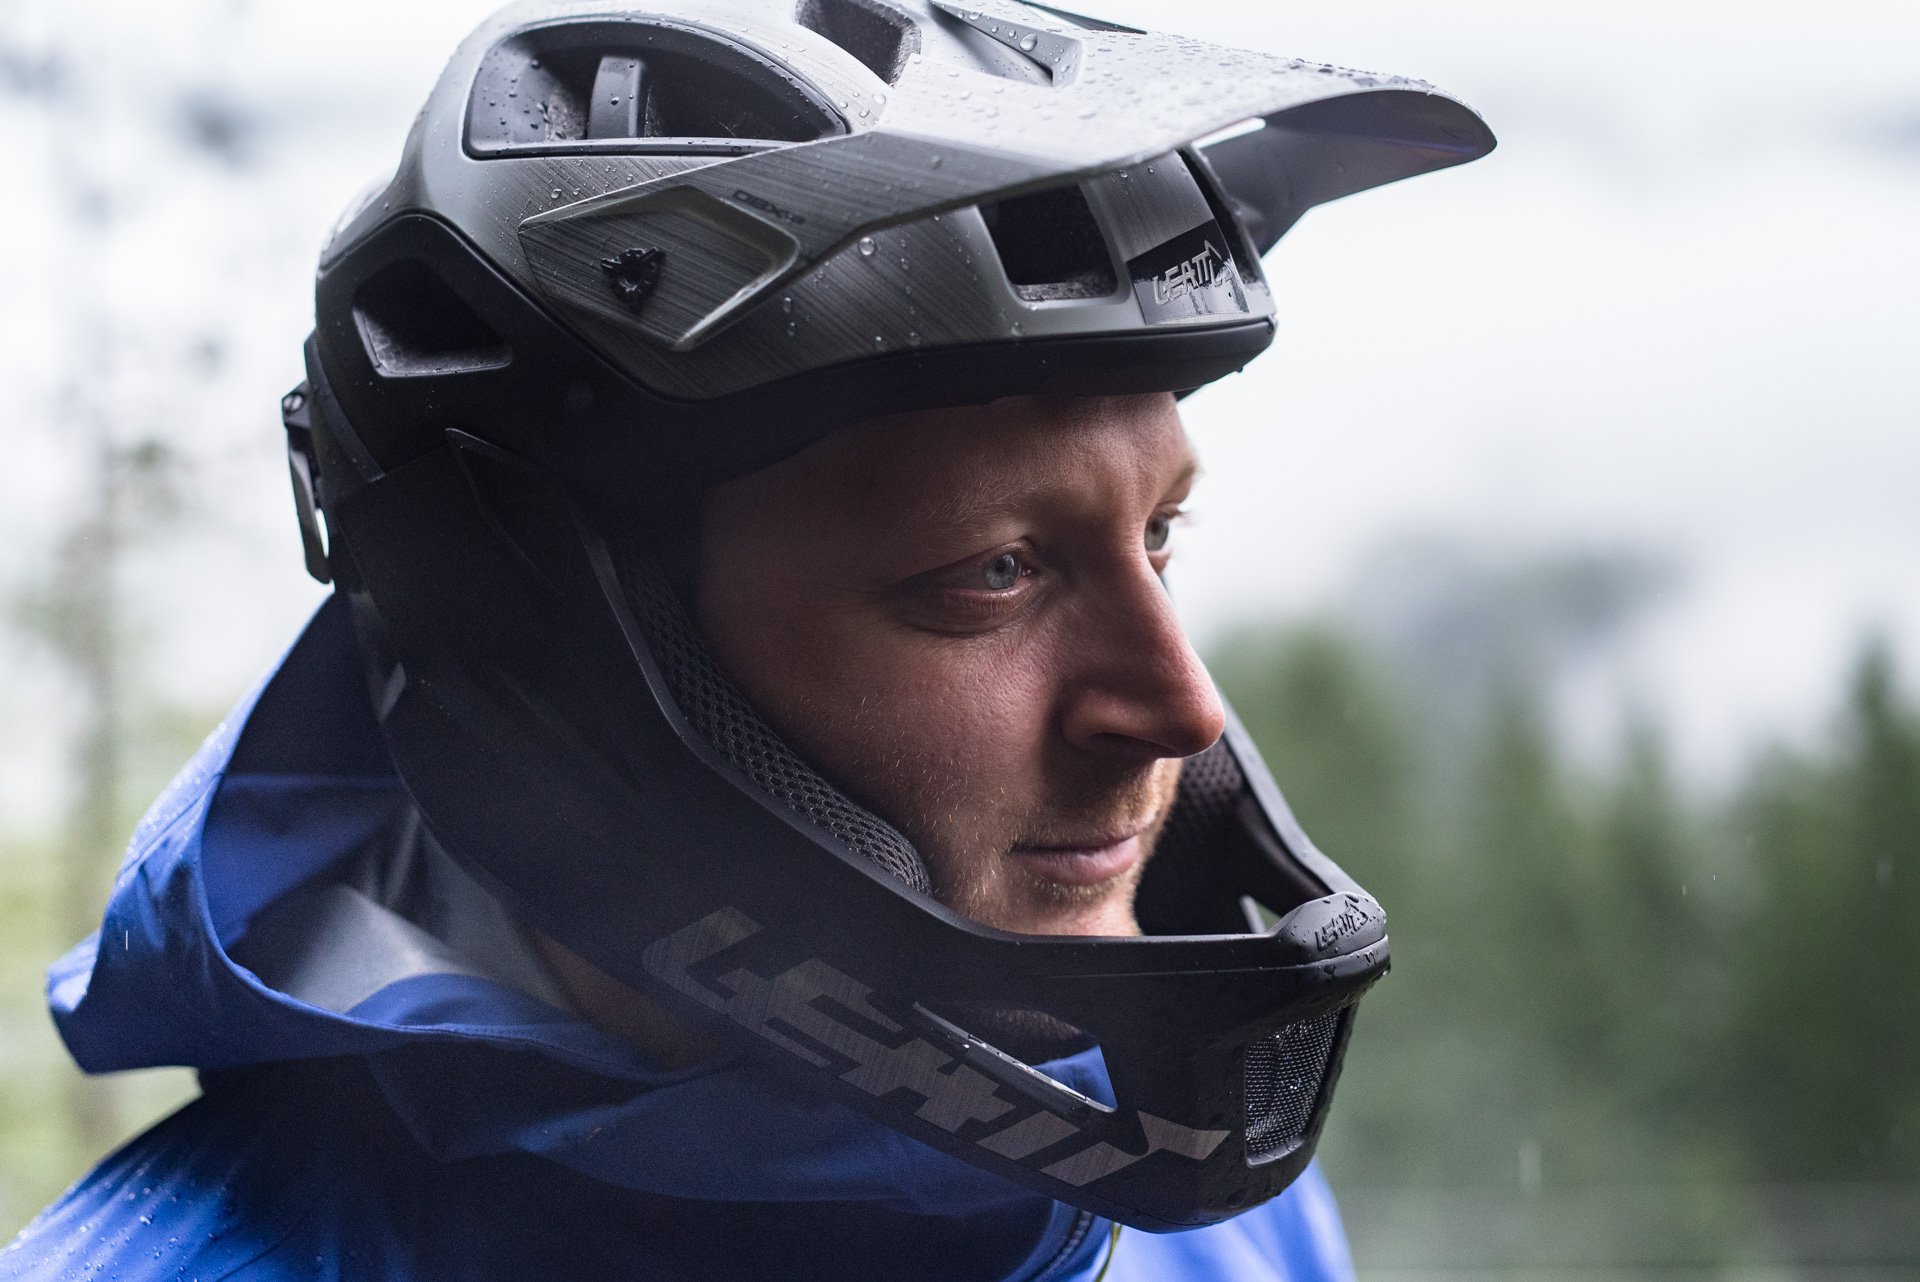 Leatt DBX 3.0 Enduro Helmet